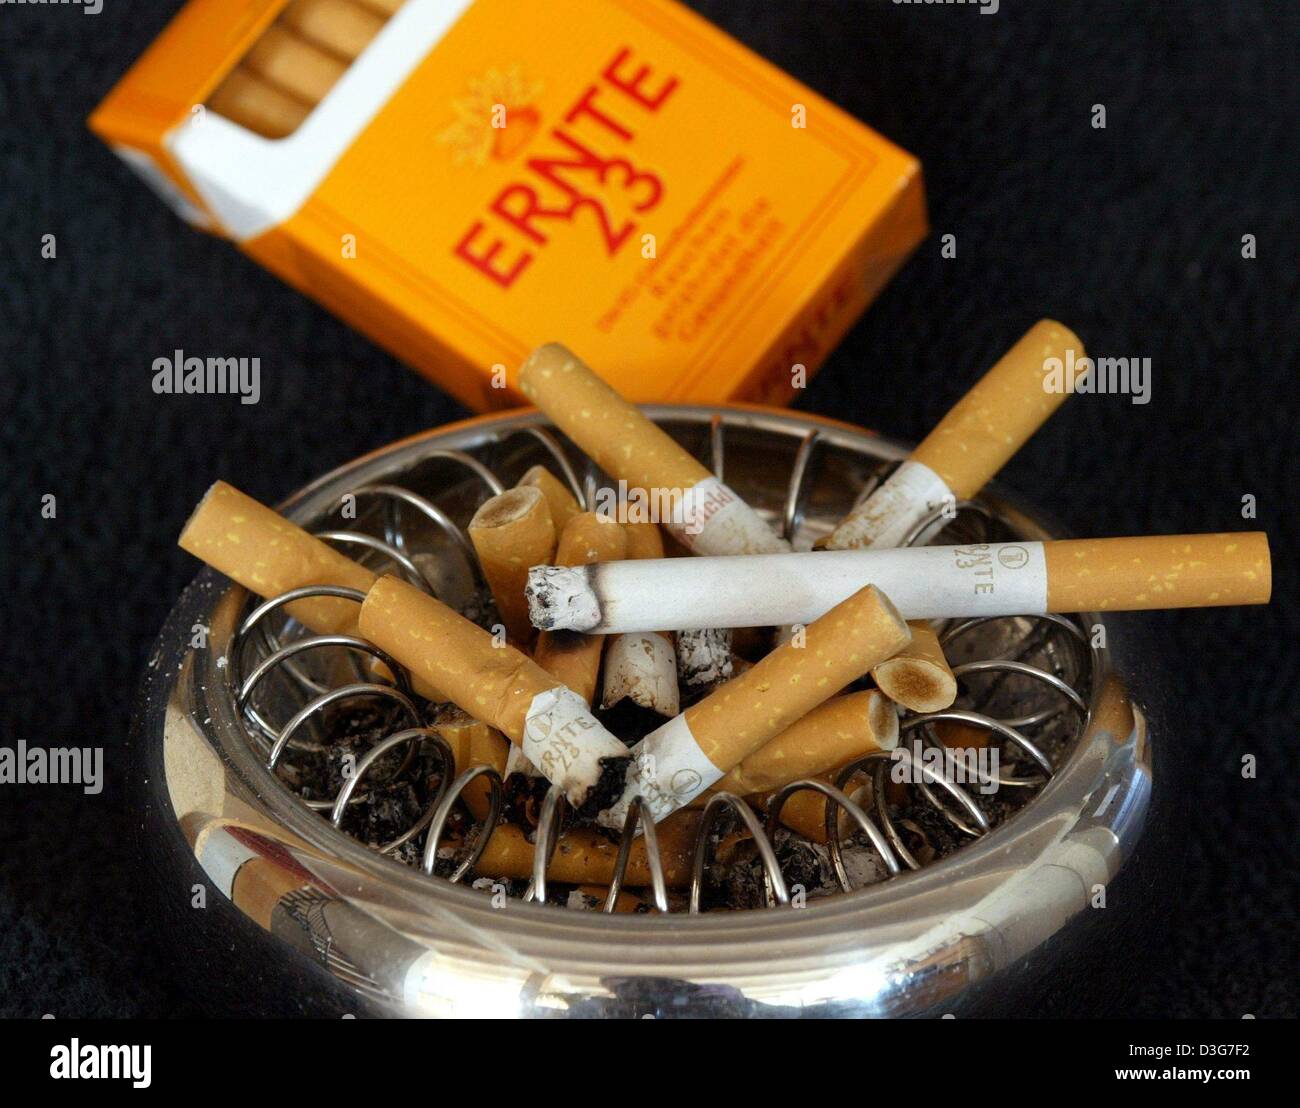 Dpa) - das symbolische Bild zeigt ein voller Aschenbecher und eine Ernte 23  ("Ernte 23") Zigarettenpackung in Vluyn, Deutschland, 4. November 2003. In  einem ersten bittet ein chronischer Raucher ein deutsches Gericht